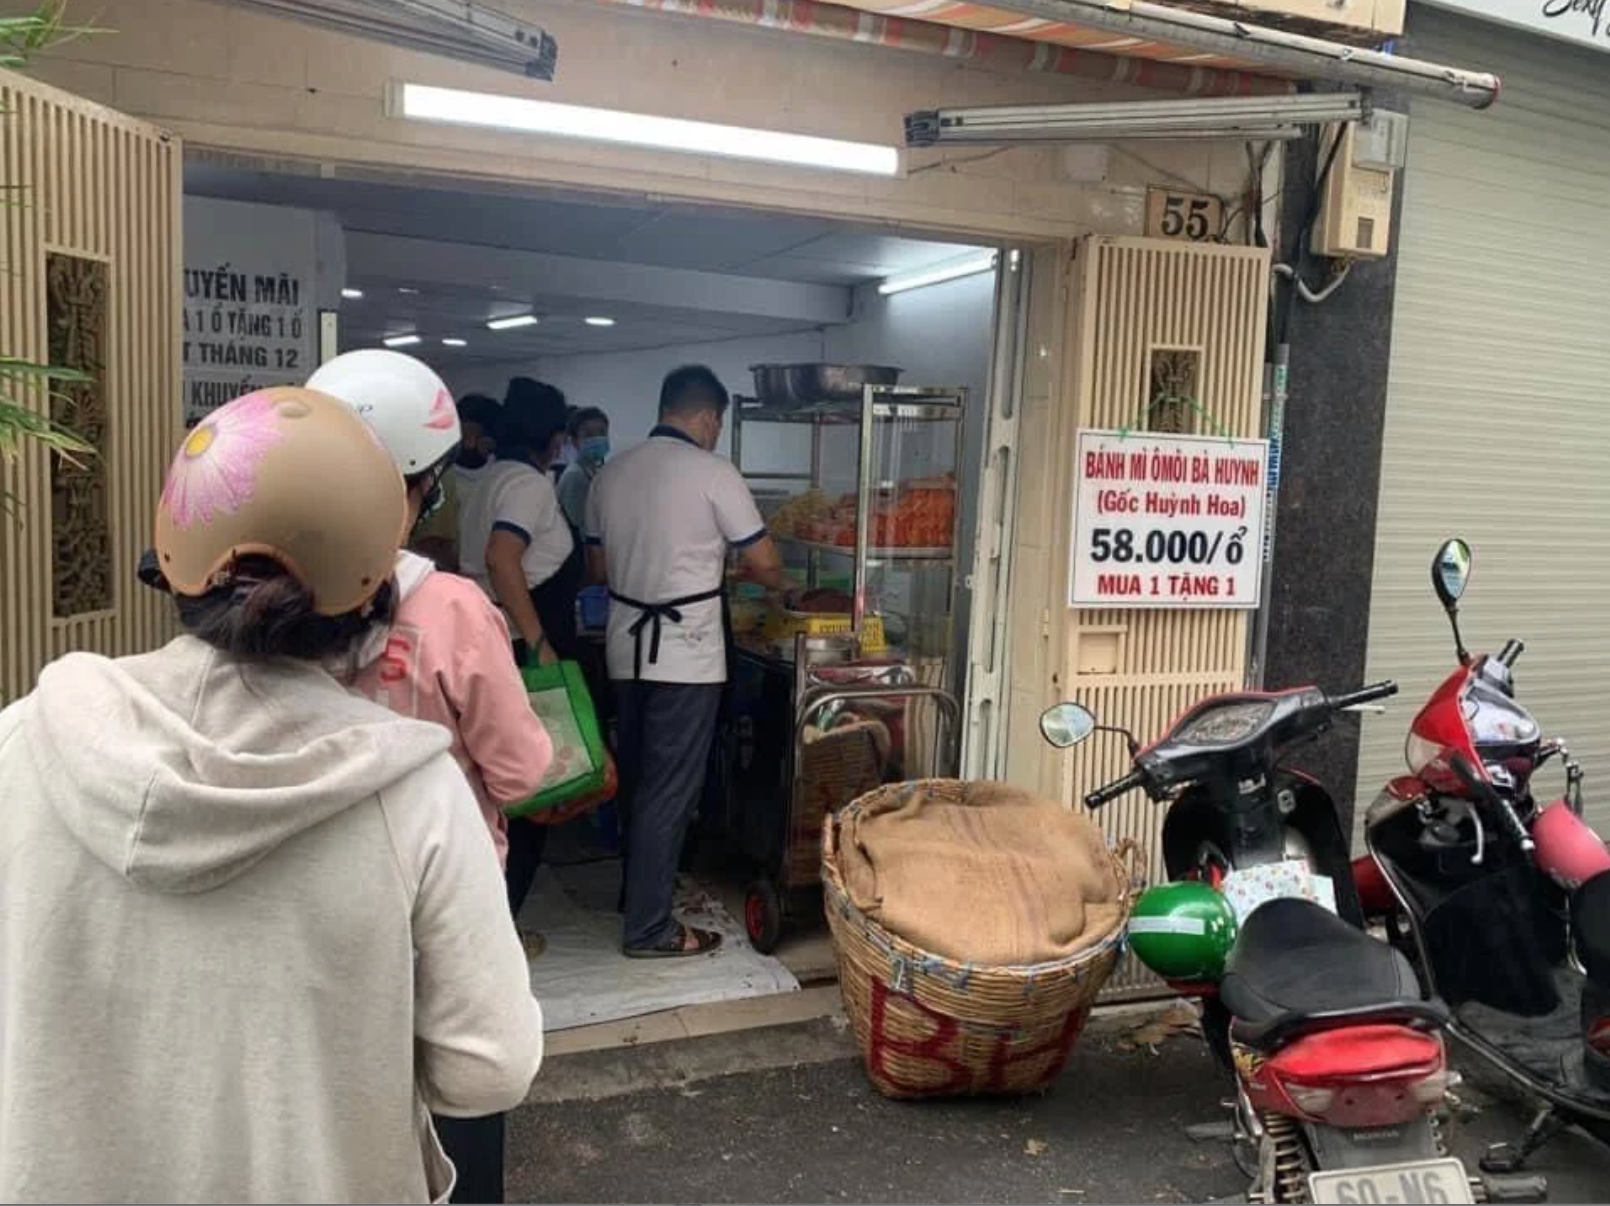 ... còn đây là dòng người đang xếp hàng chờ mua bánh mì Ômôi Bà Huynh tại địa chỉ số 55, đường số 4, cư xá Đô Thành, quận 3.